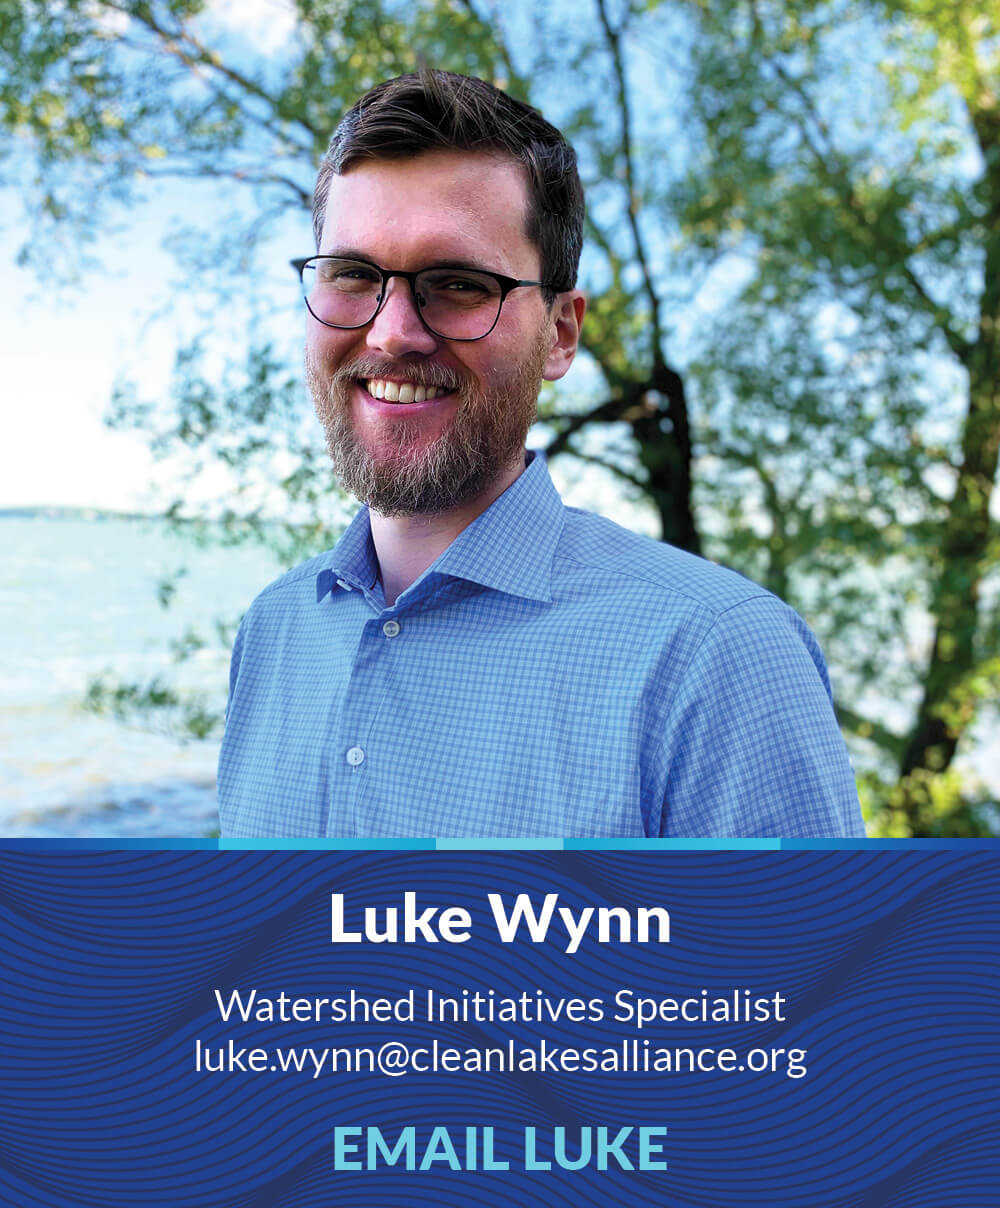 Luke Wynn, Watershed Initiatives Specialist